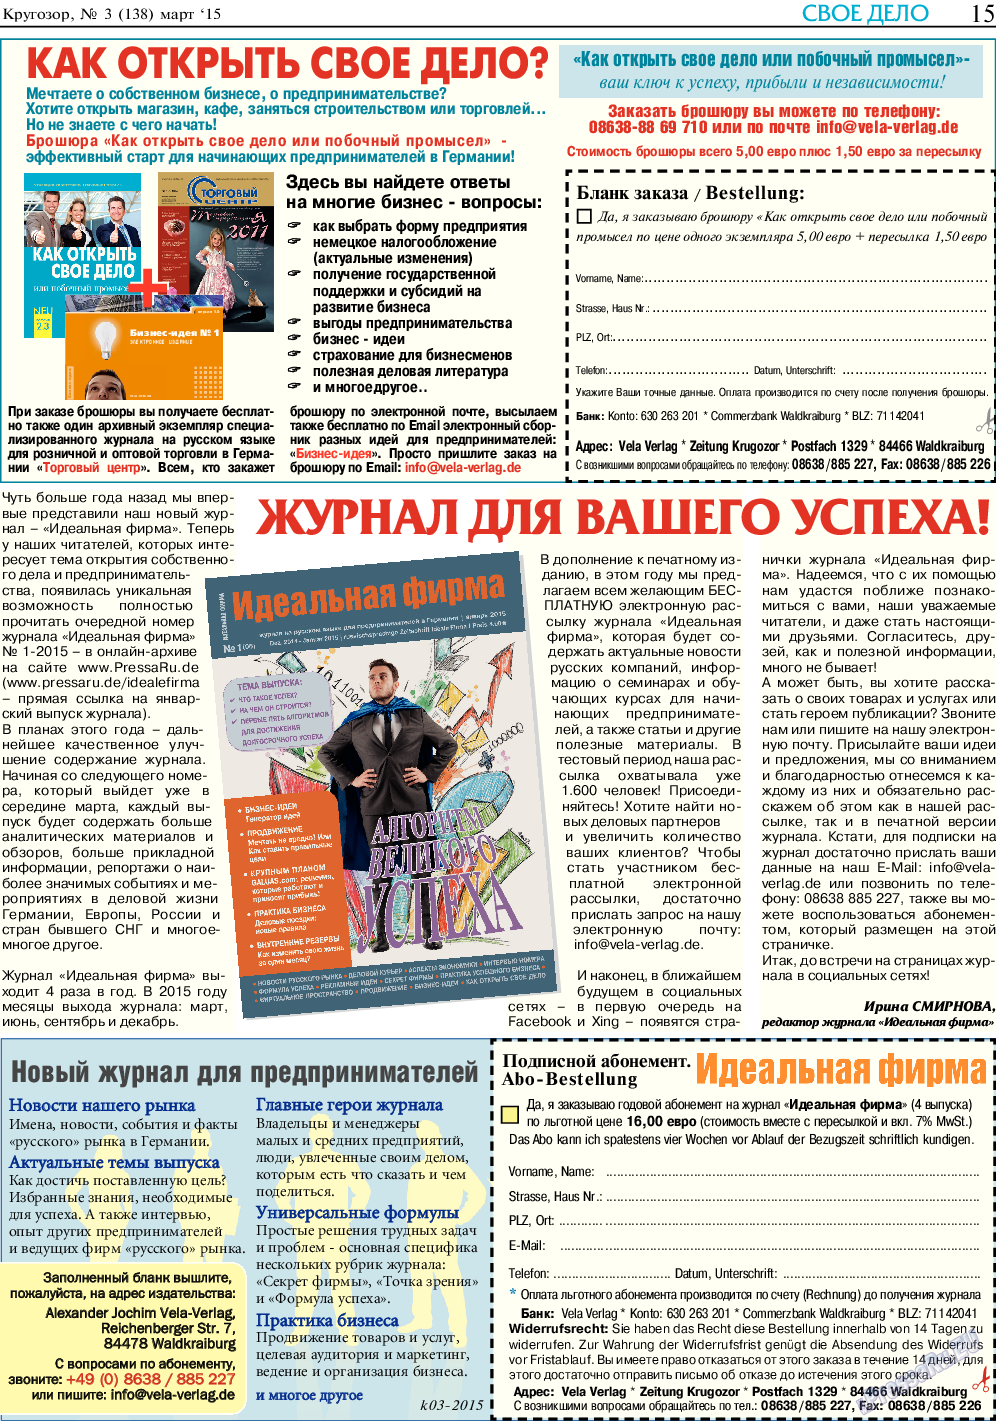 Кругозор, газета. 2015 №3 стр.15